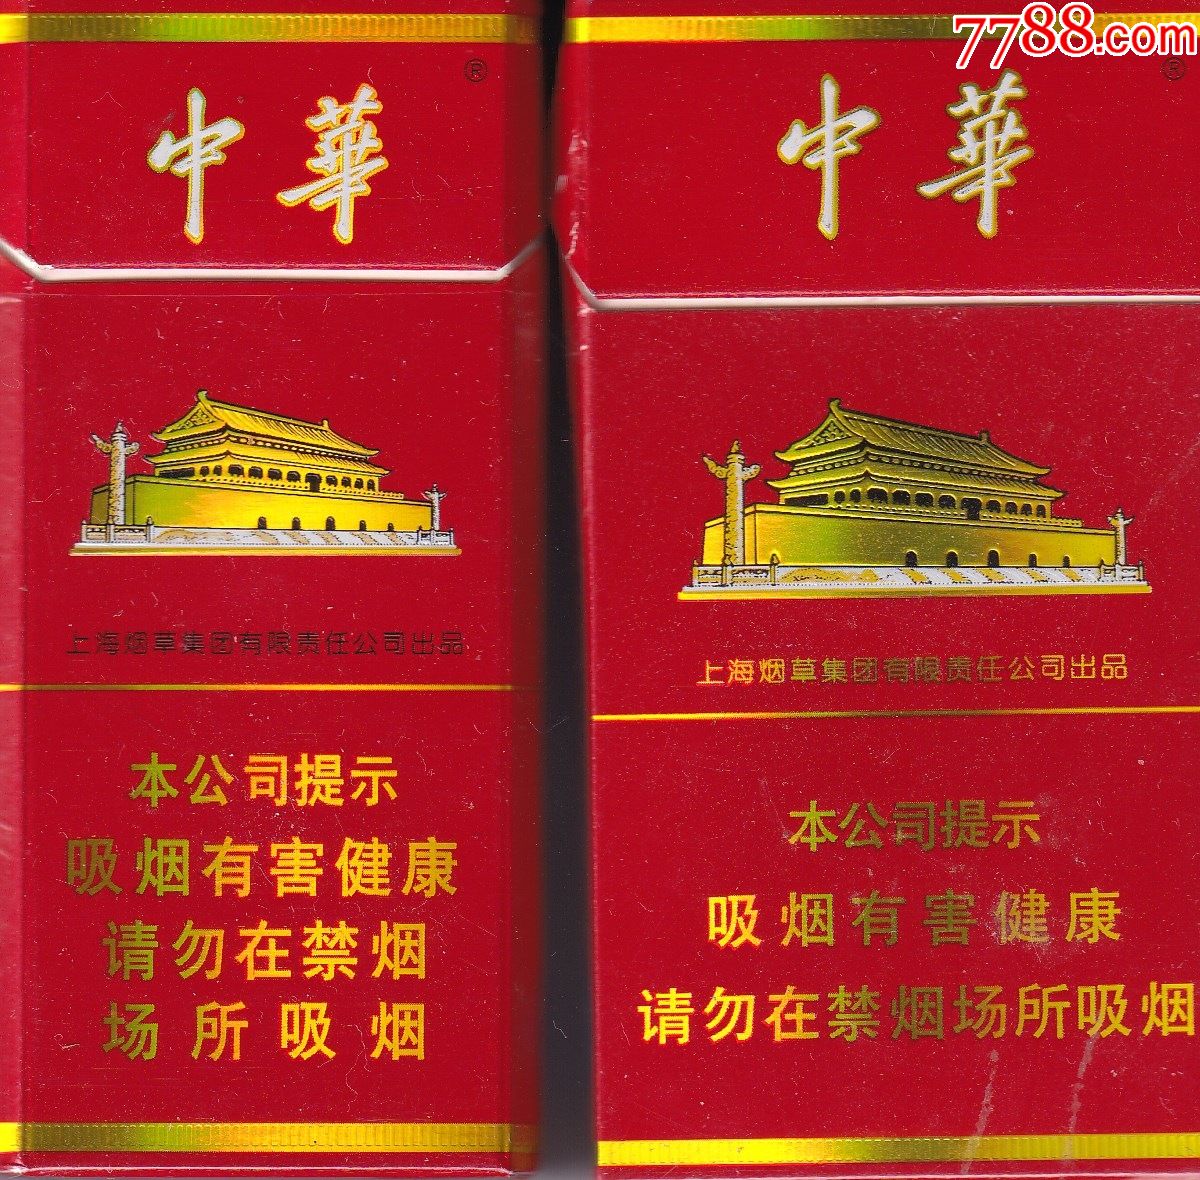 中华烟硬盒图片图片